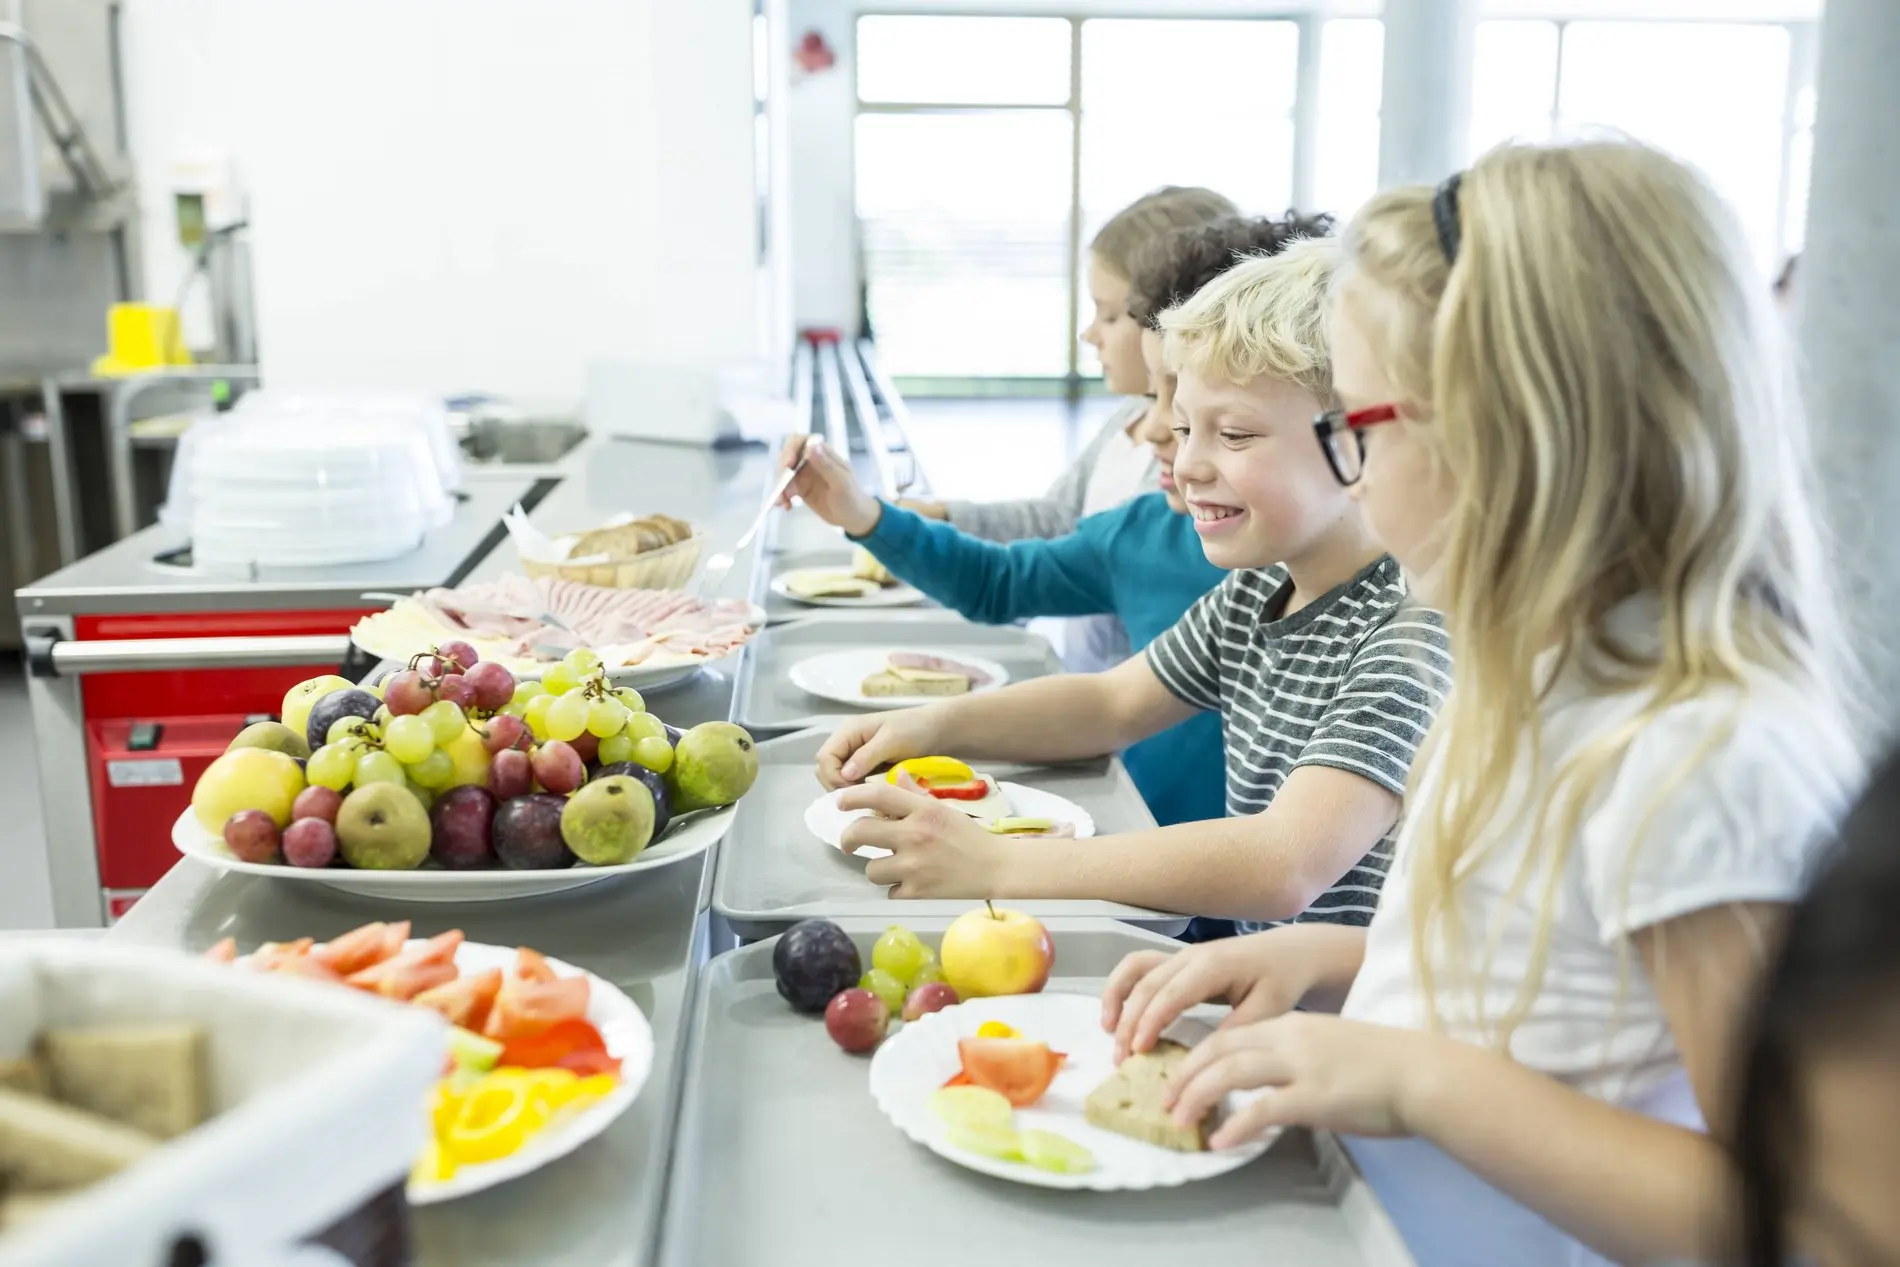 Der Bürgerrat empfiehlt kostenlose und gesunde Ernährung für Kinder und Jugendliche